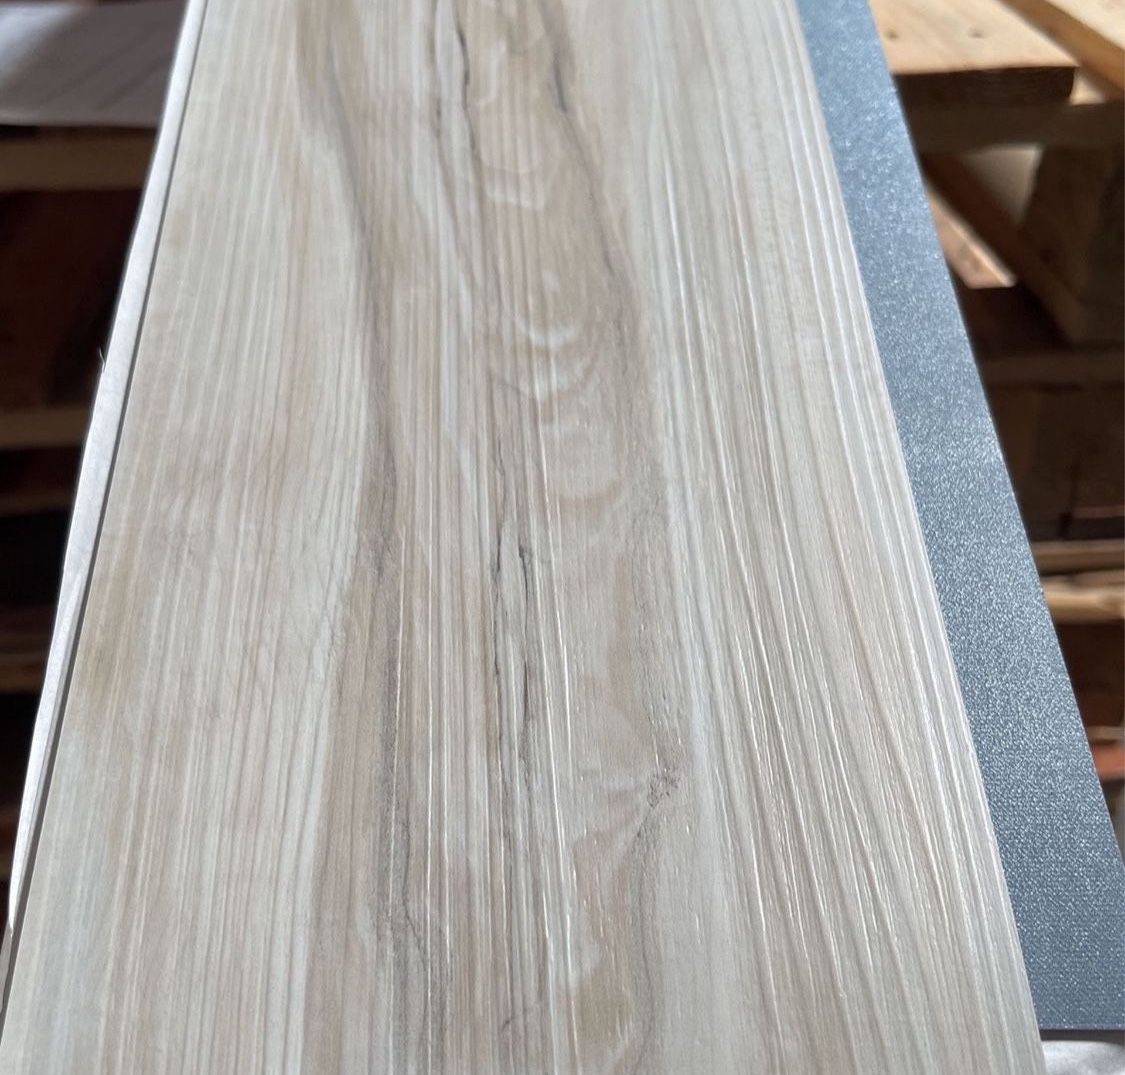 White Maple 4 MIL x 6 in. W × 36 in. L Grip Strip Water Resistant Luxury Vinyl Plank Flooring